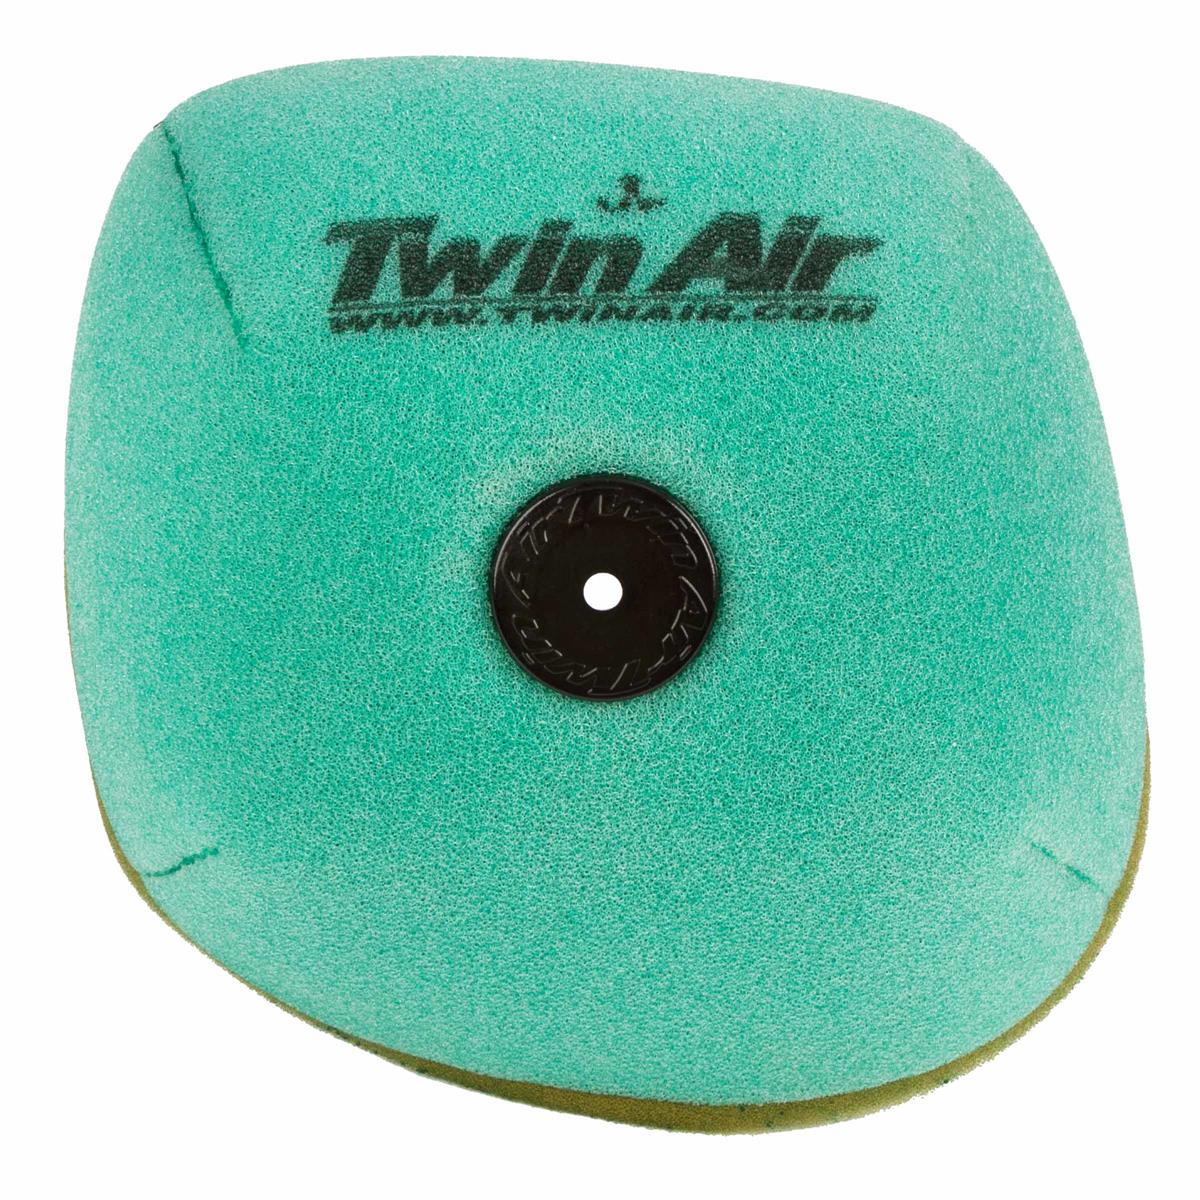 Twin Air Air Filter Pre-Oiled Honda CRF 250R 14-17, CRF 450R 13-16